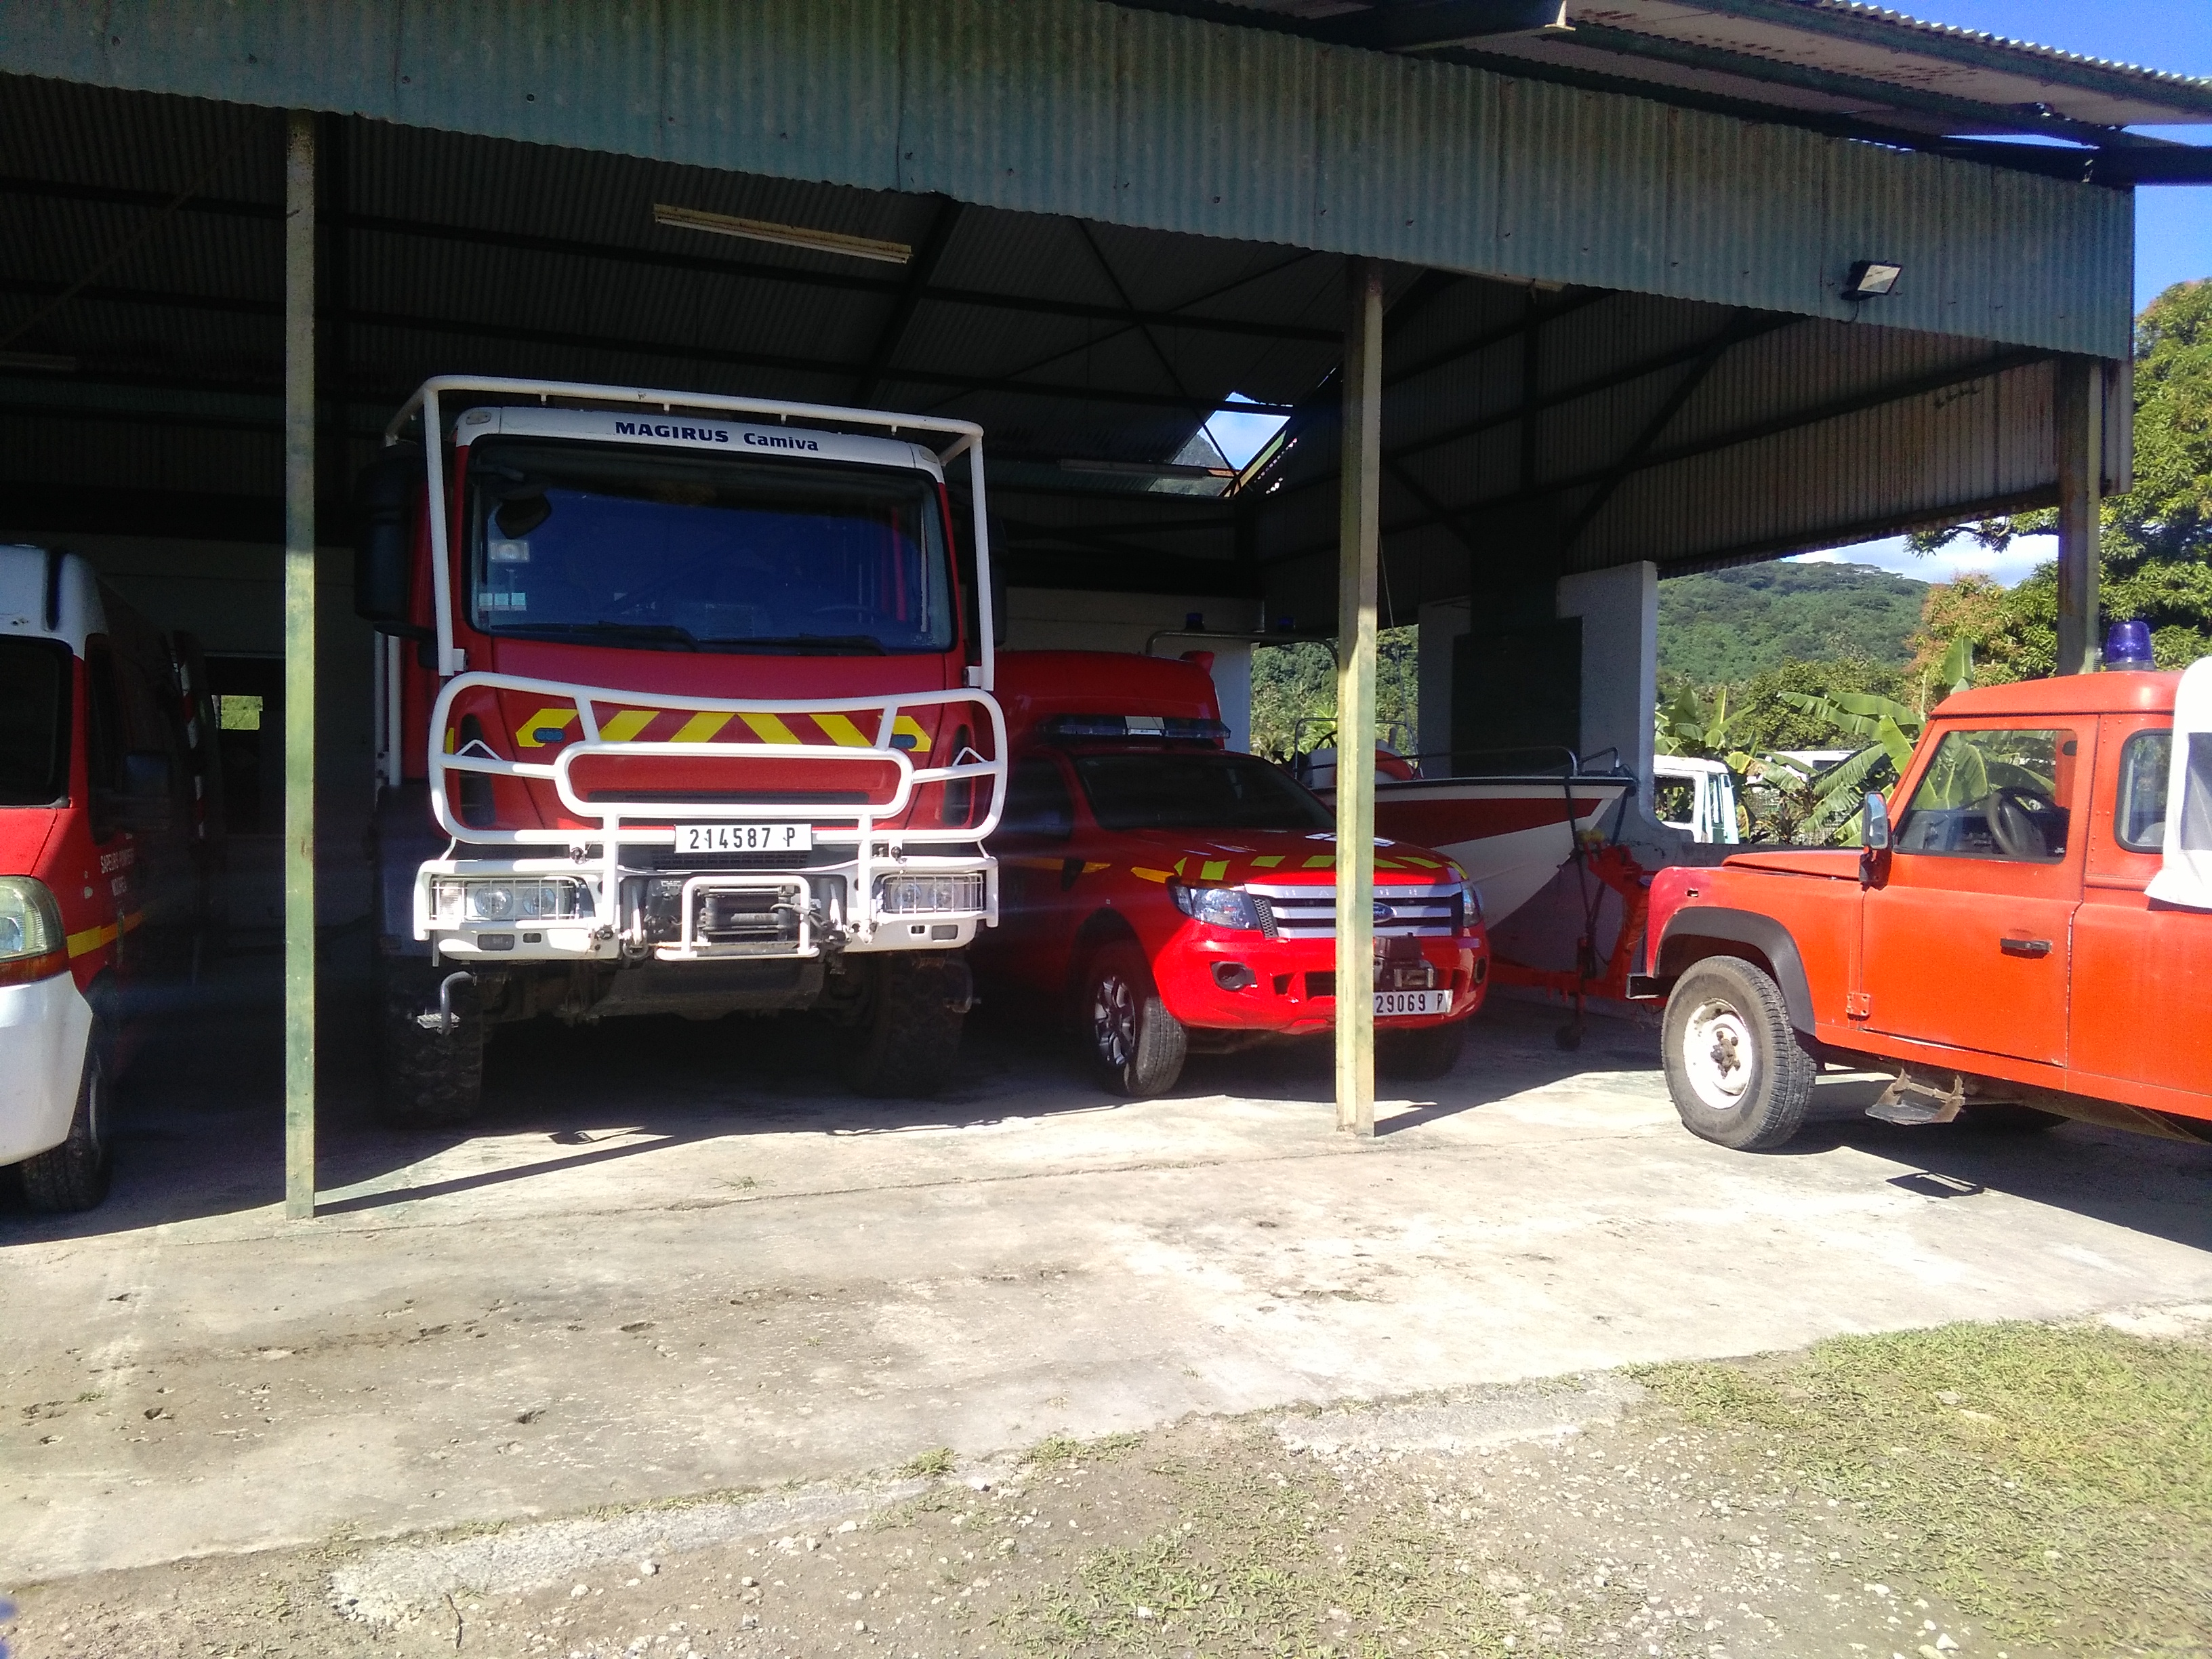 Sept sapeurs-pompiers volontaires de la caserne de Nuuroa à Haapiti se retrouvent en mauvaise posture